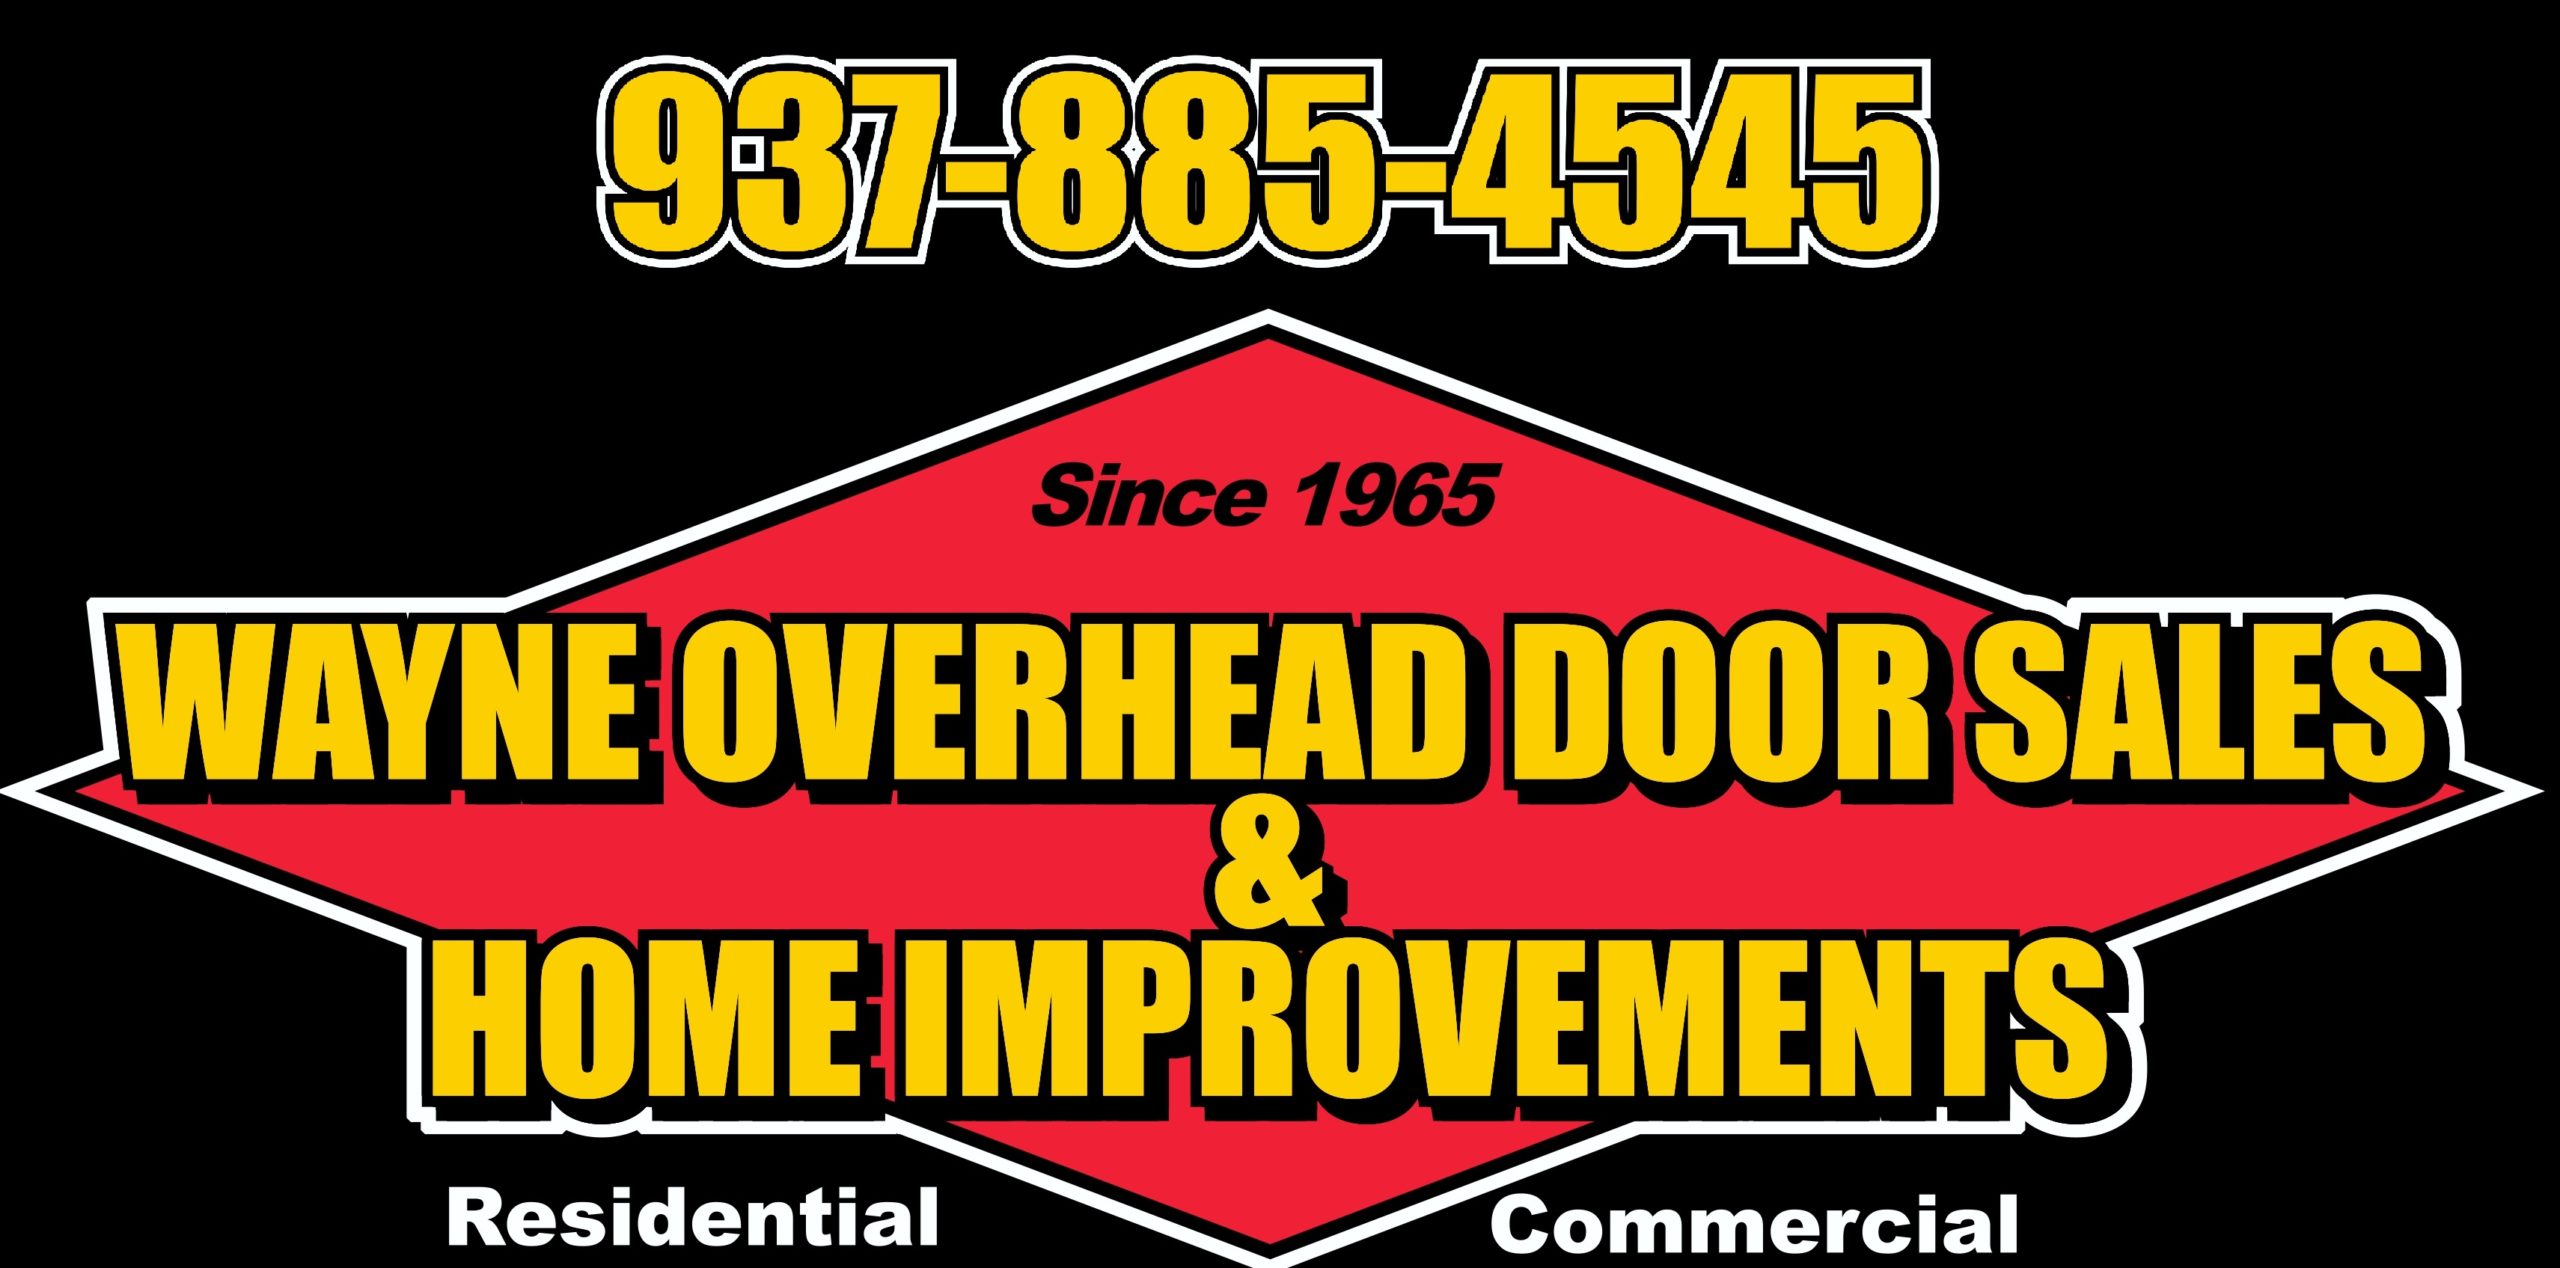 Wayne Overhead Door Sales Logo